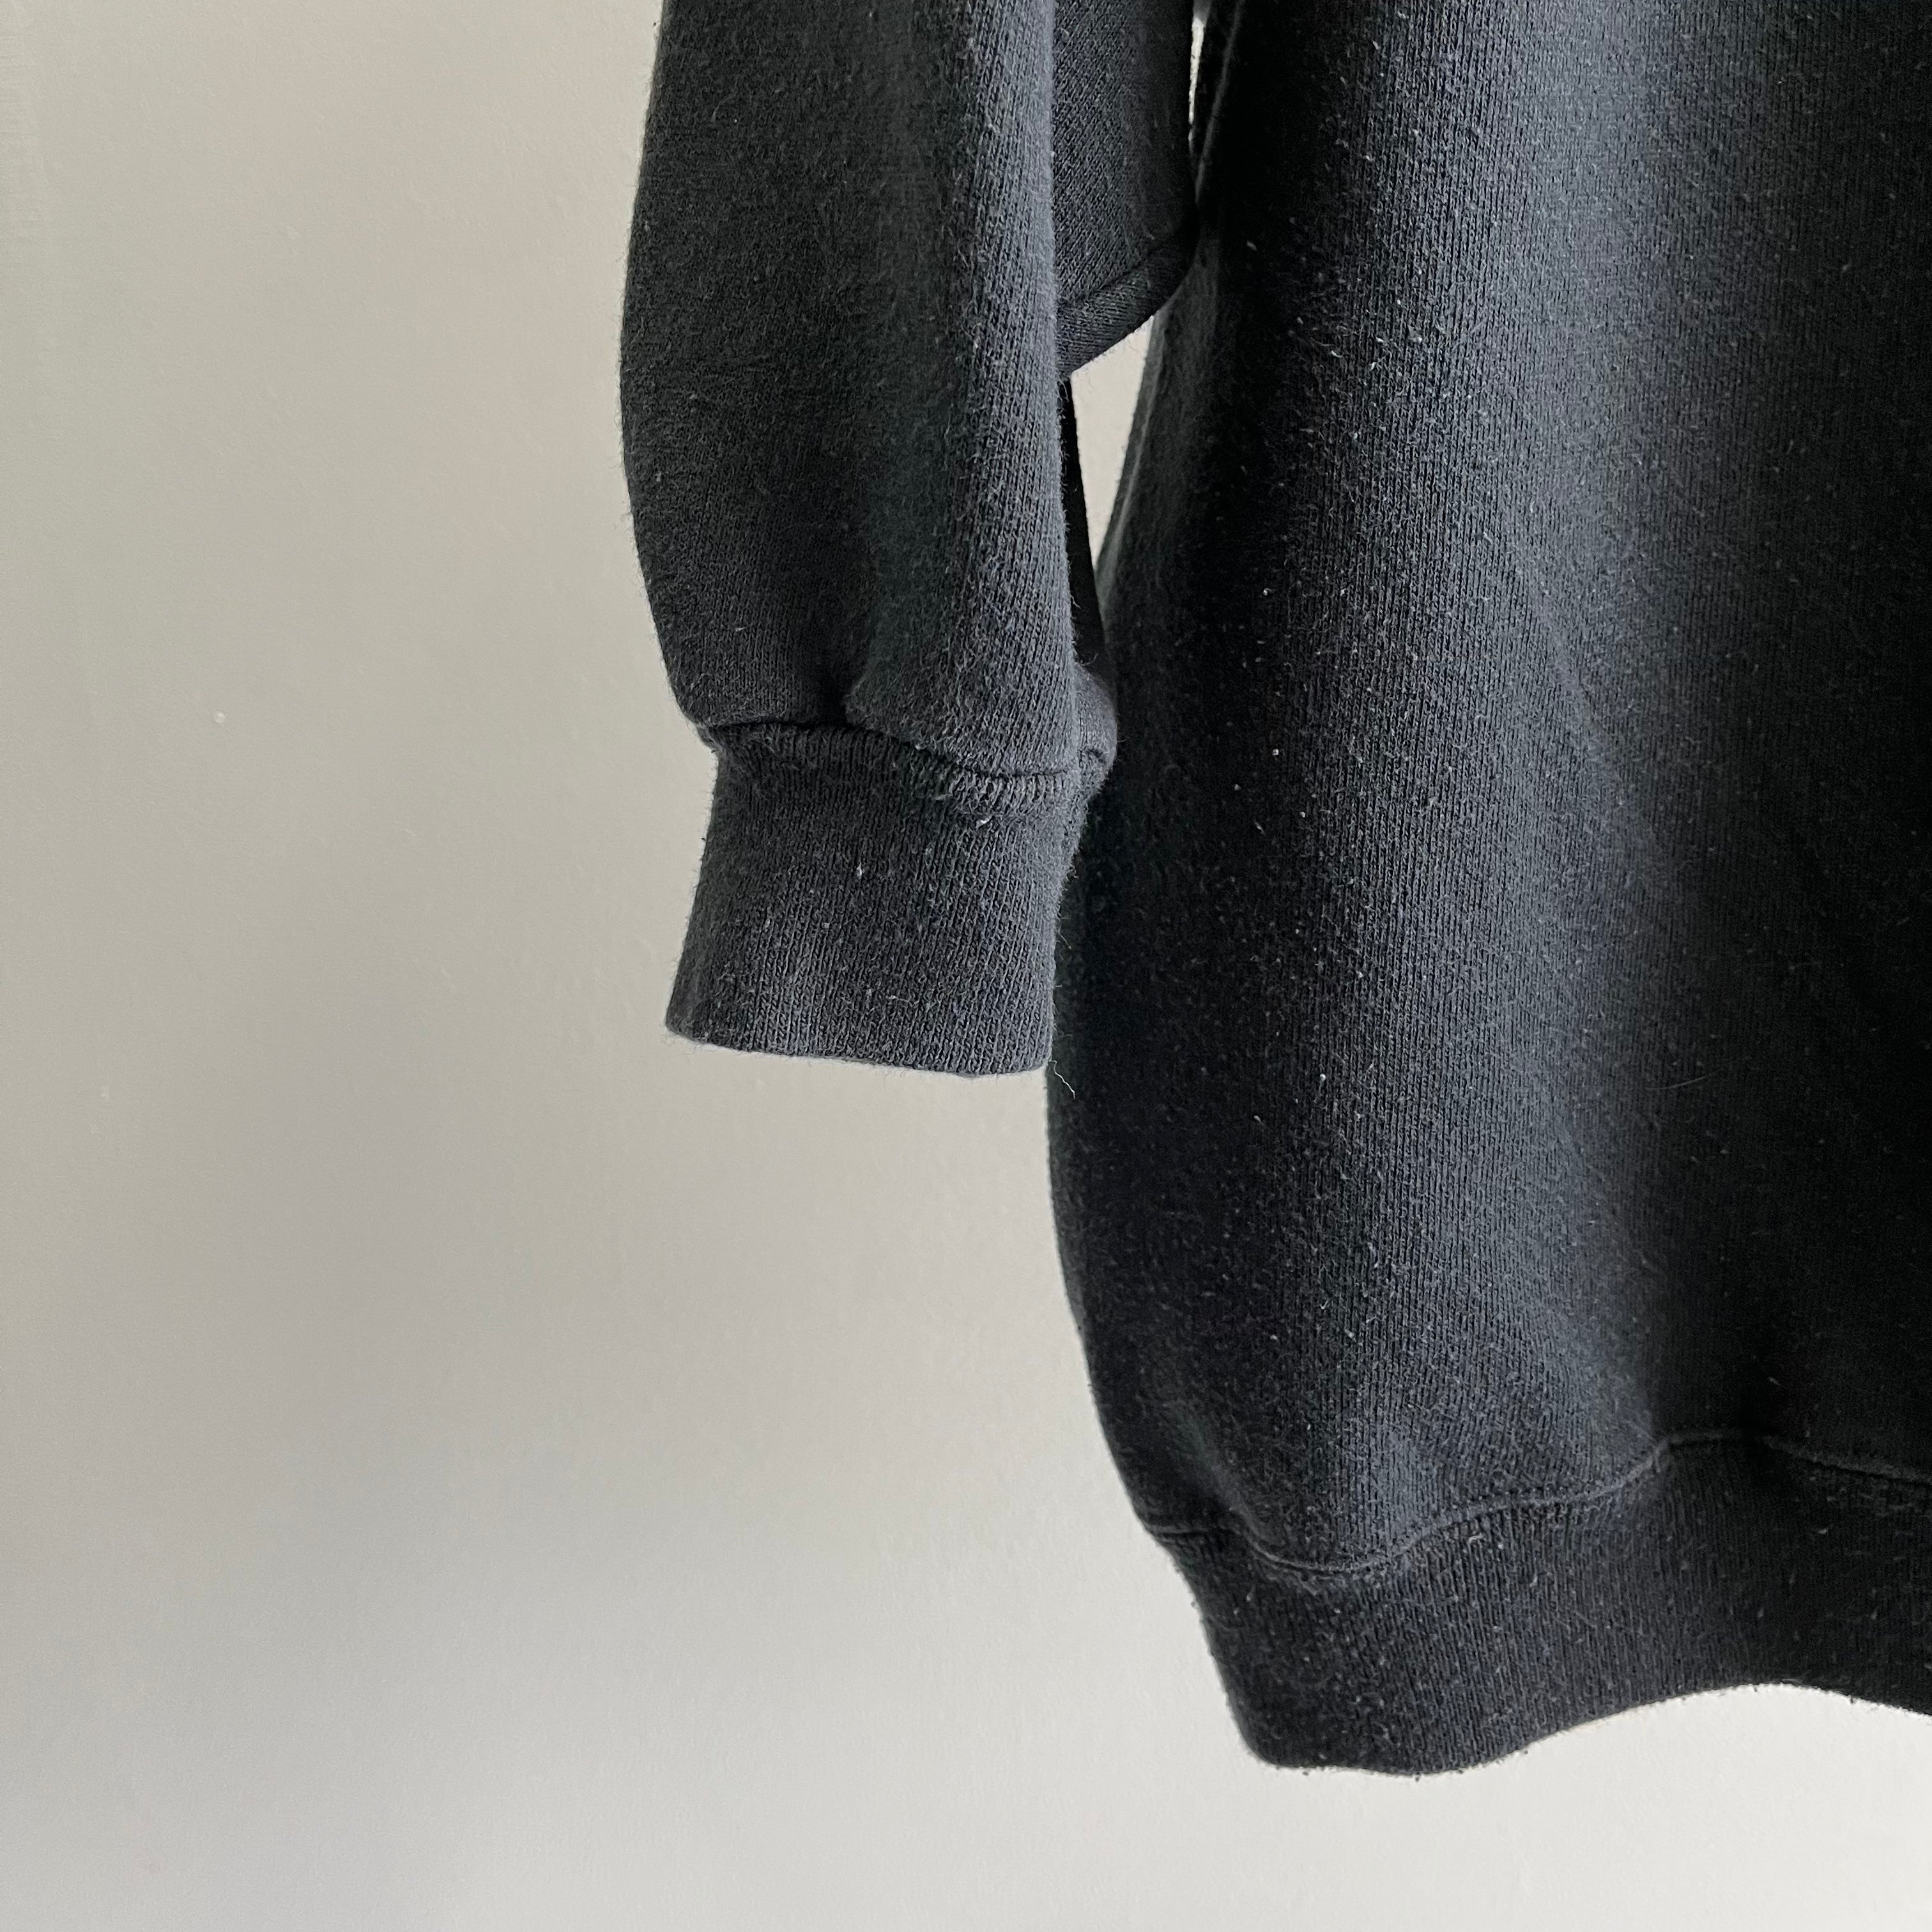 Sweat-shirt noir vierge délavé des années 1980 avec manches 3/4